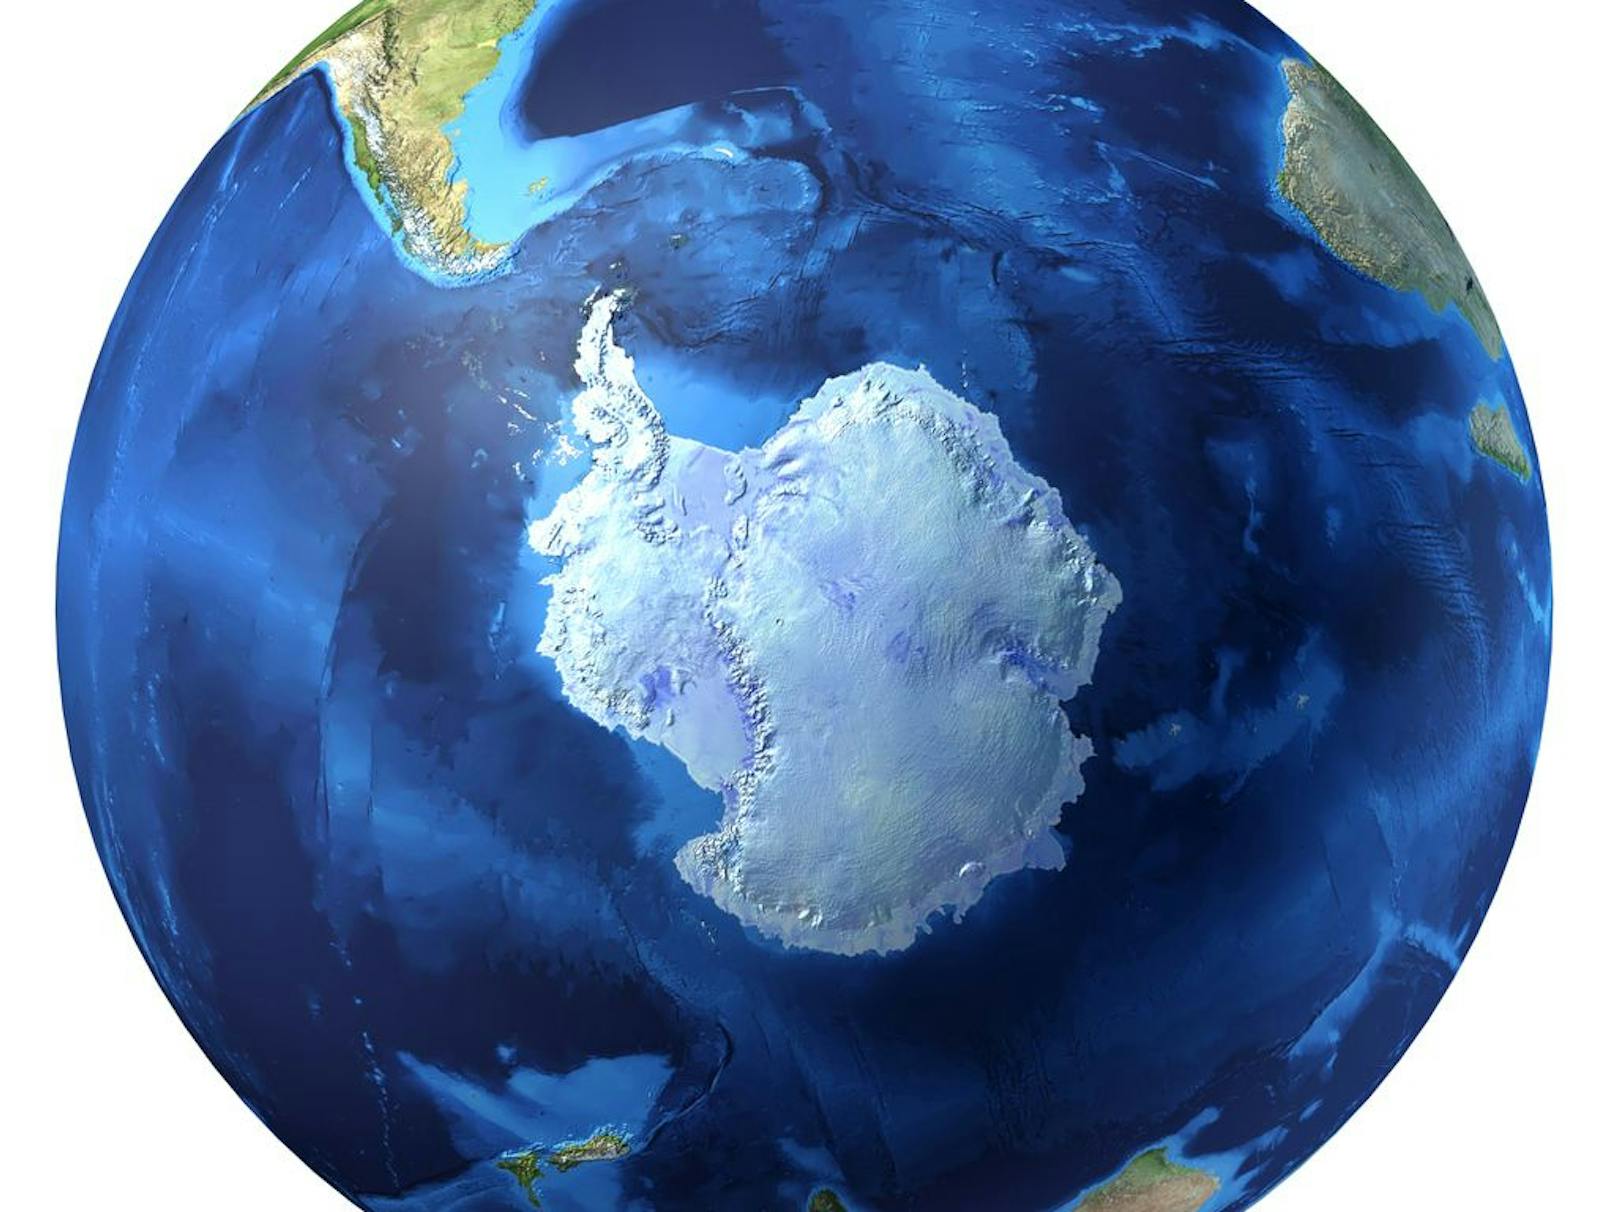 Antarktika ist der Südkontinent der Erde, auf dem auch der Südpol selbst liegt. Es liegt inmitten der Antarktis, mit der er umgangssprachlich oft identifiziert wird.